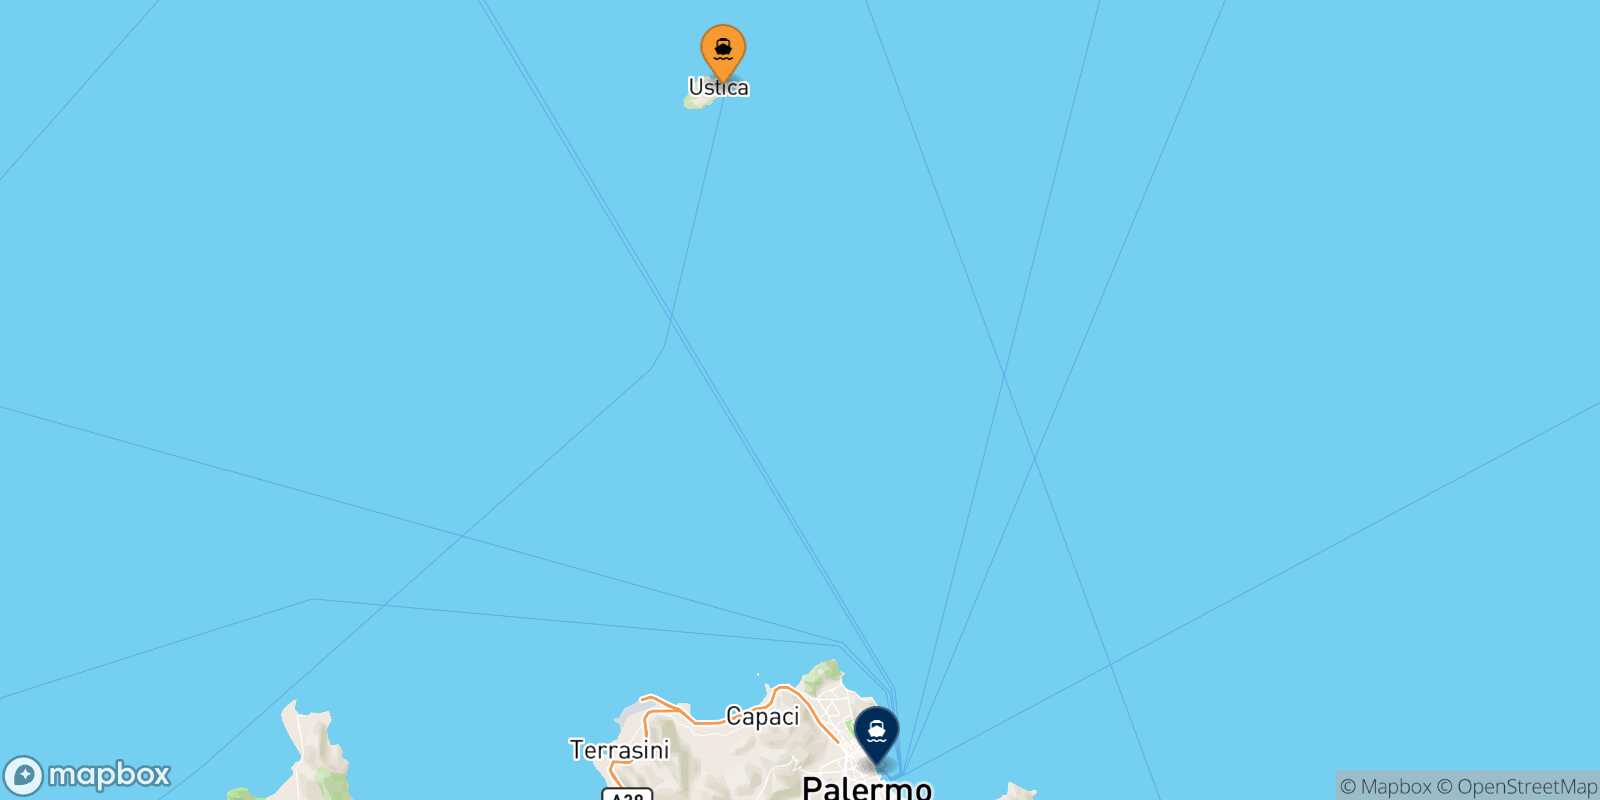 Mapa de los destinos alcanzables de Cala S.maria (Ustica)